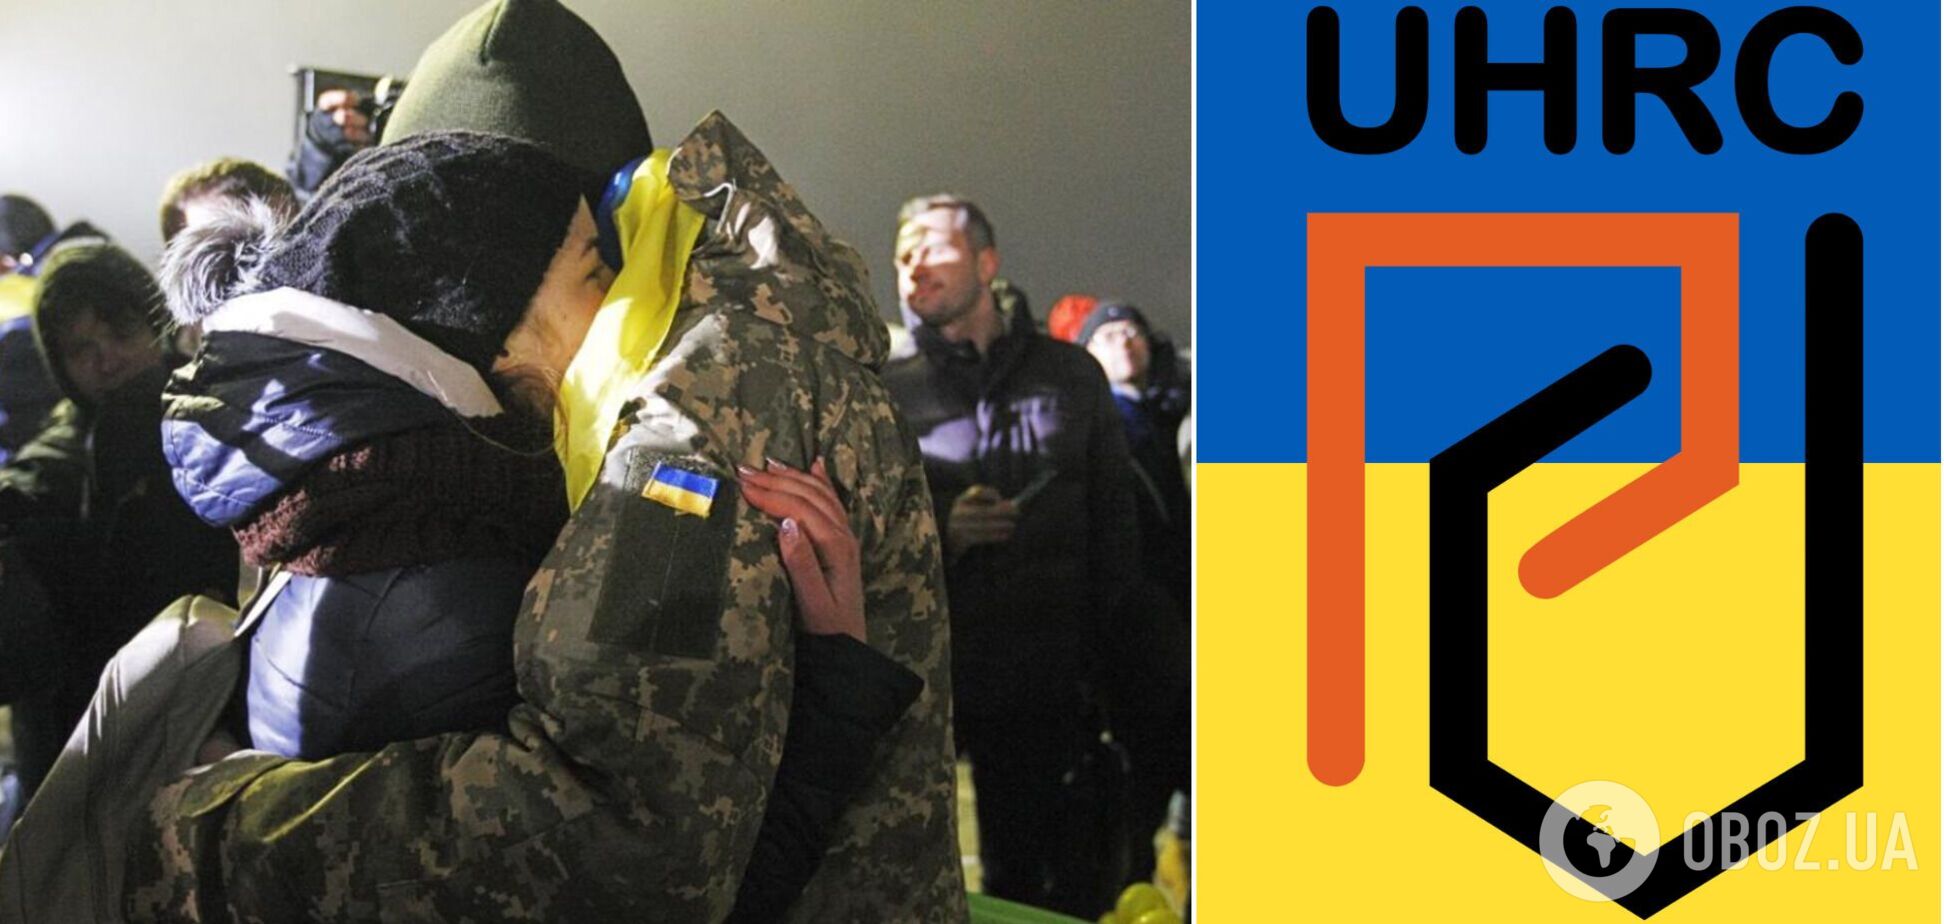 Украинский центр защиты прав человека будет оказывать помощь военнослужащим Украины и их семьям: куда обращаться